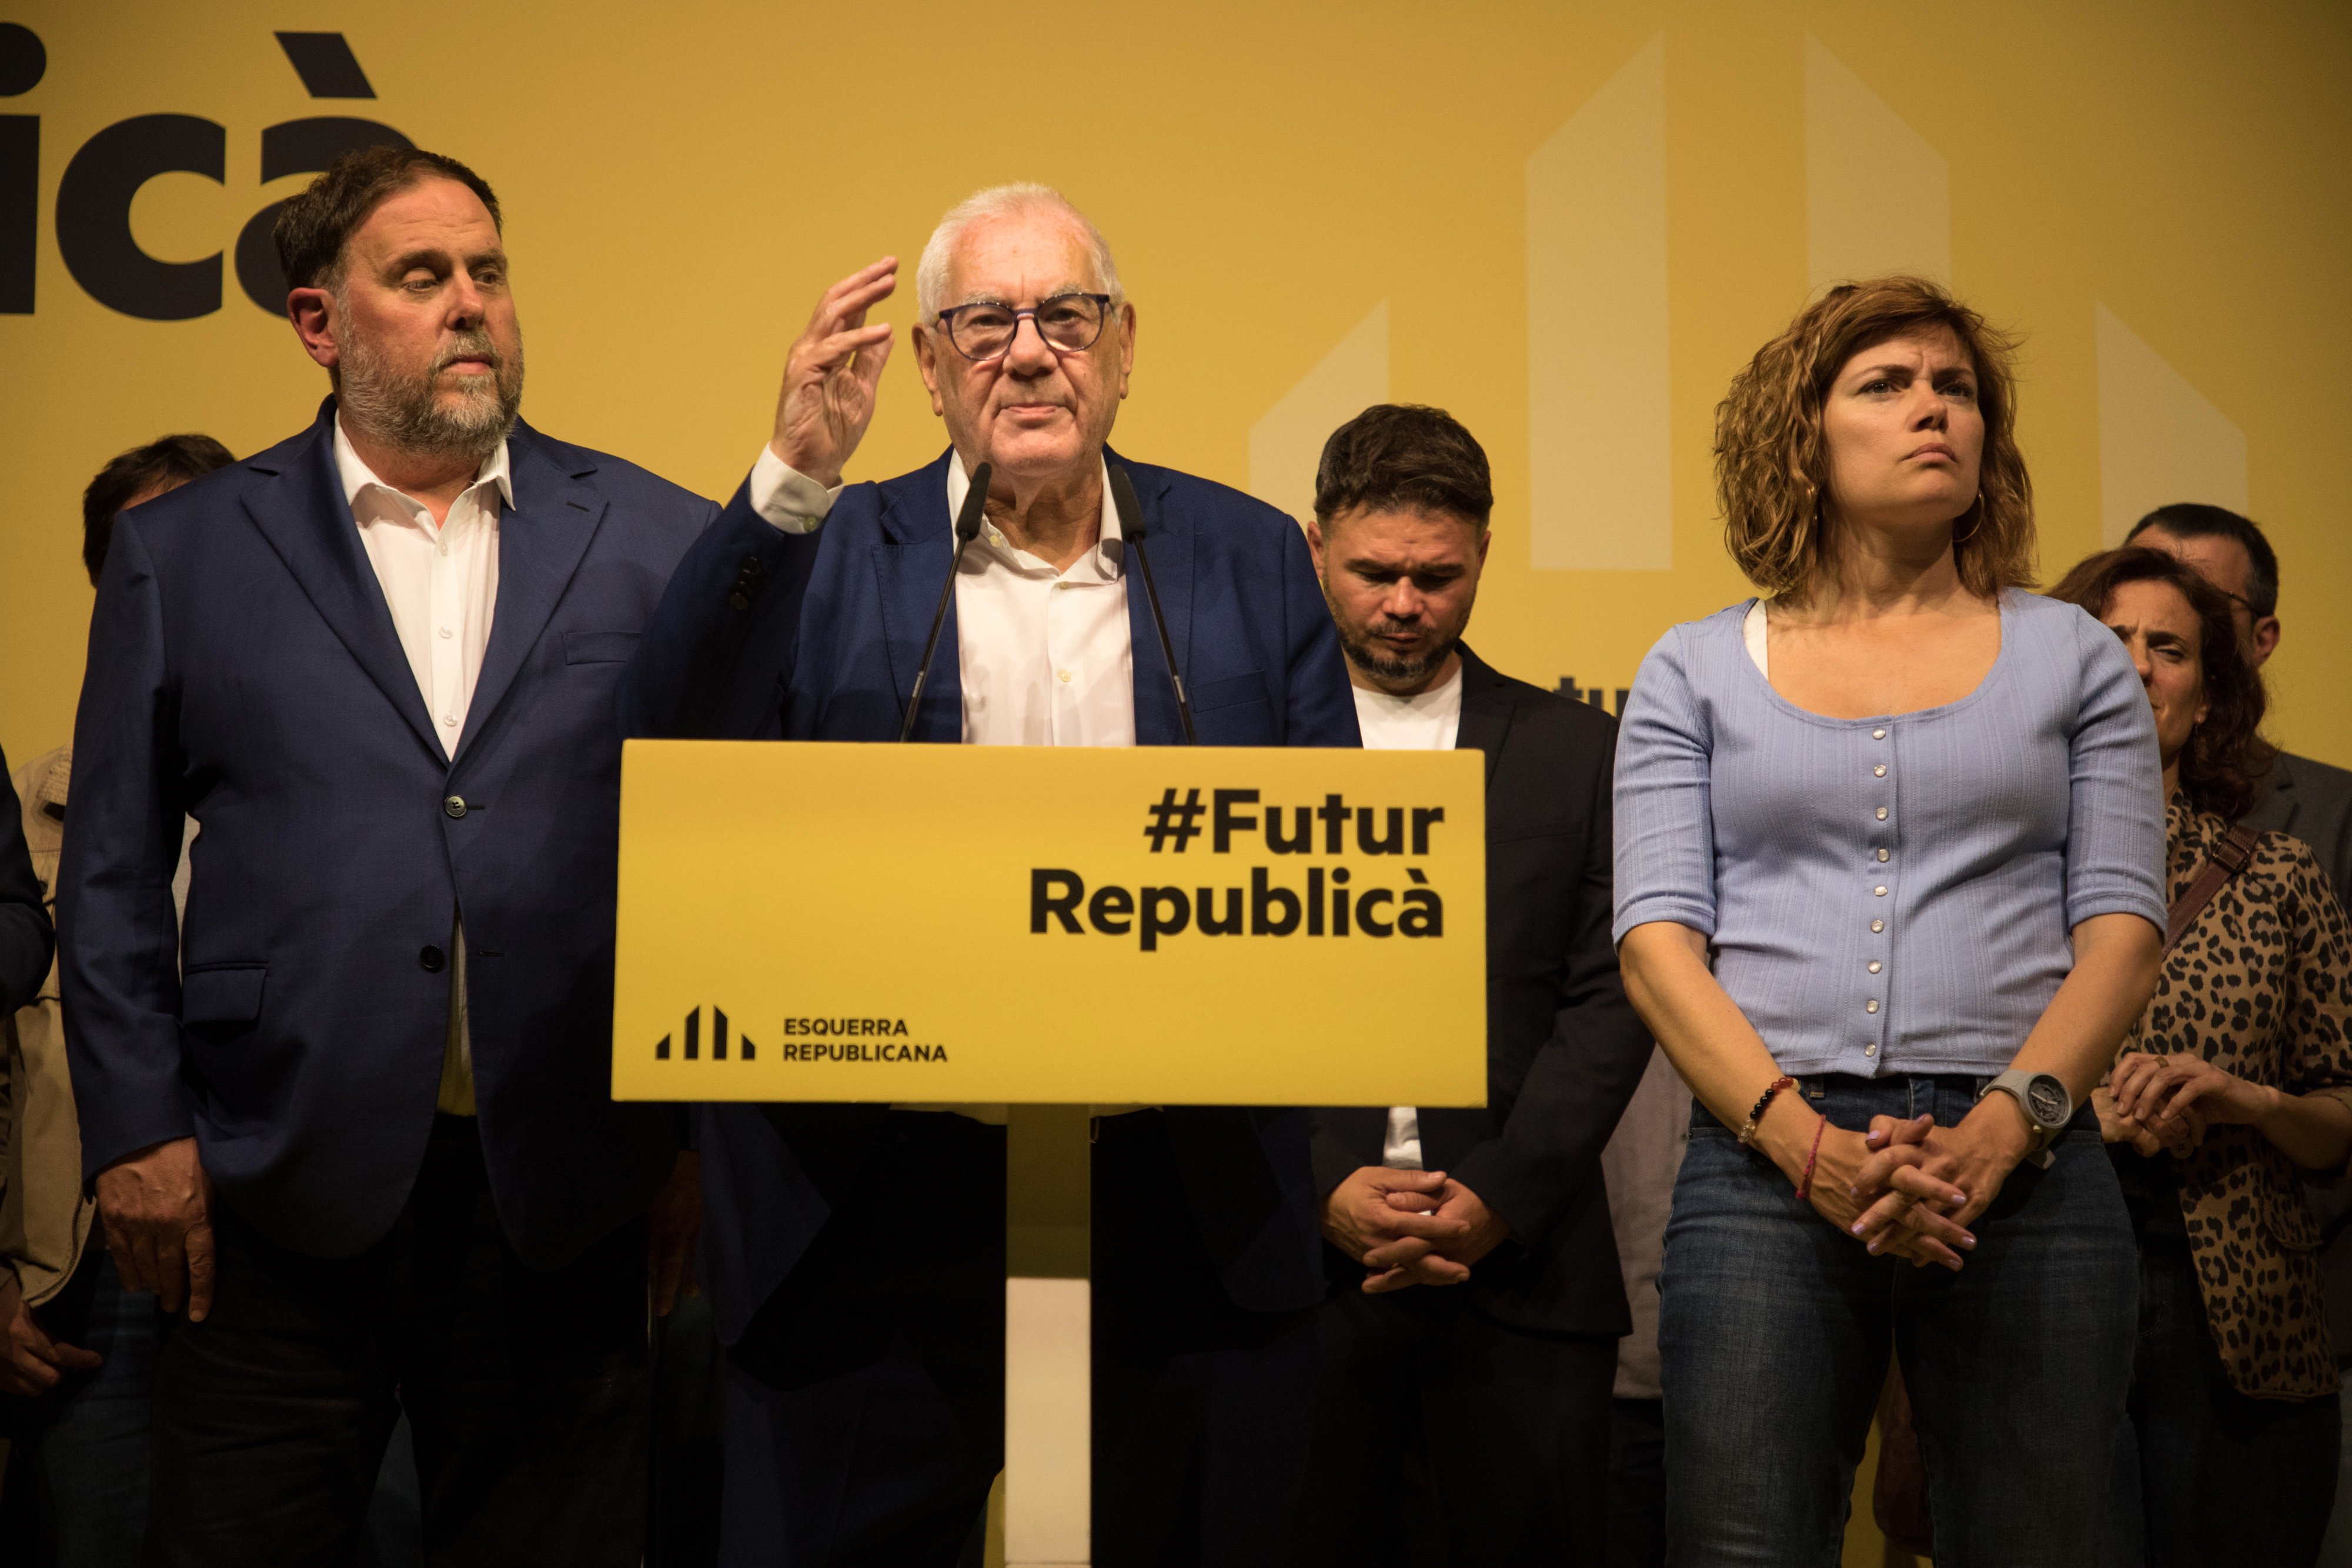 Patacada d'Ernest Maragall a Barcelona, que crida a "recompondre el sobiranisme català"